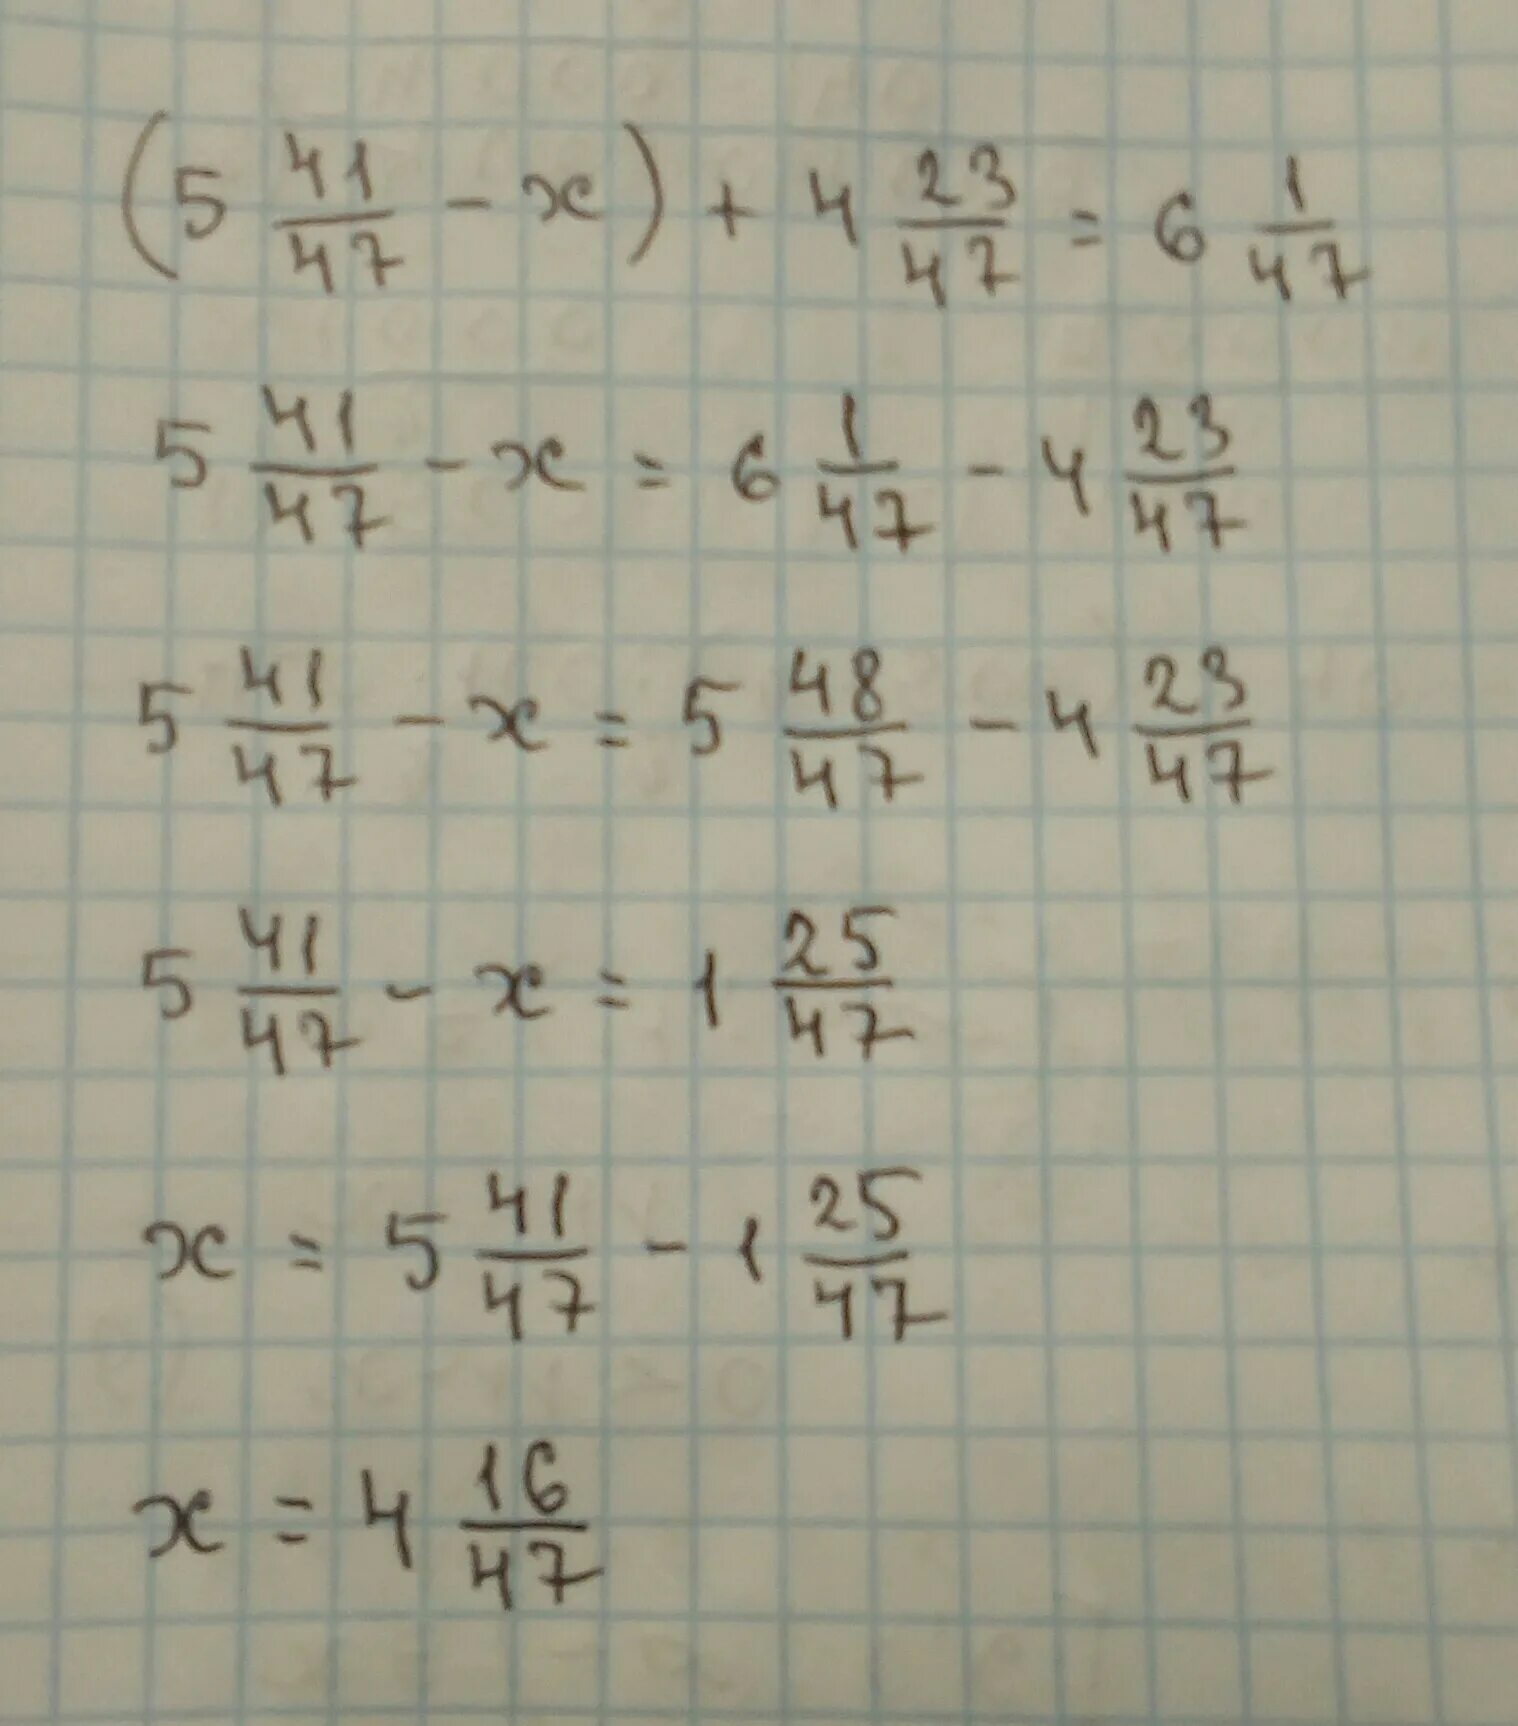 5 44/47-Х +4 23/47 6 1/47. 4,2:1,47 Решение. Пример 47 6. -47x=1.